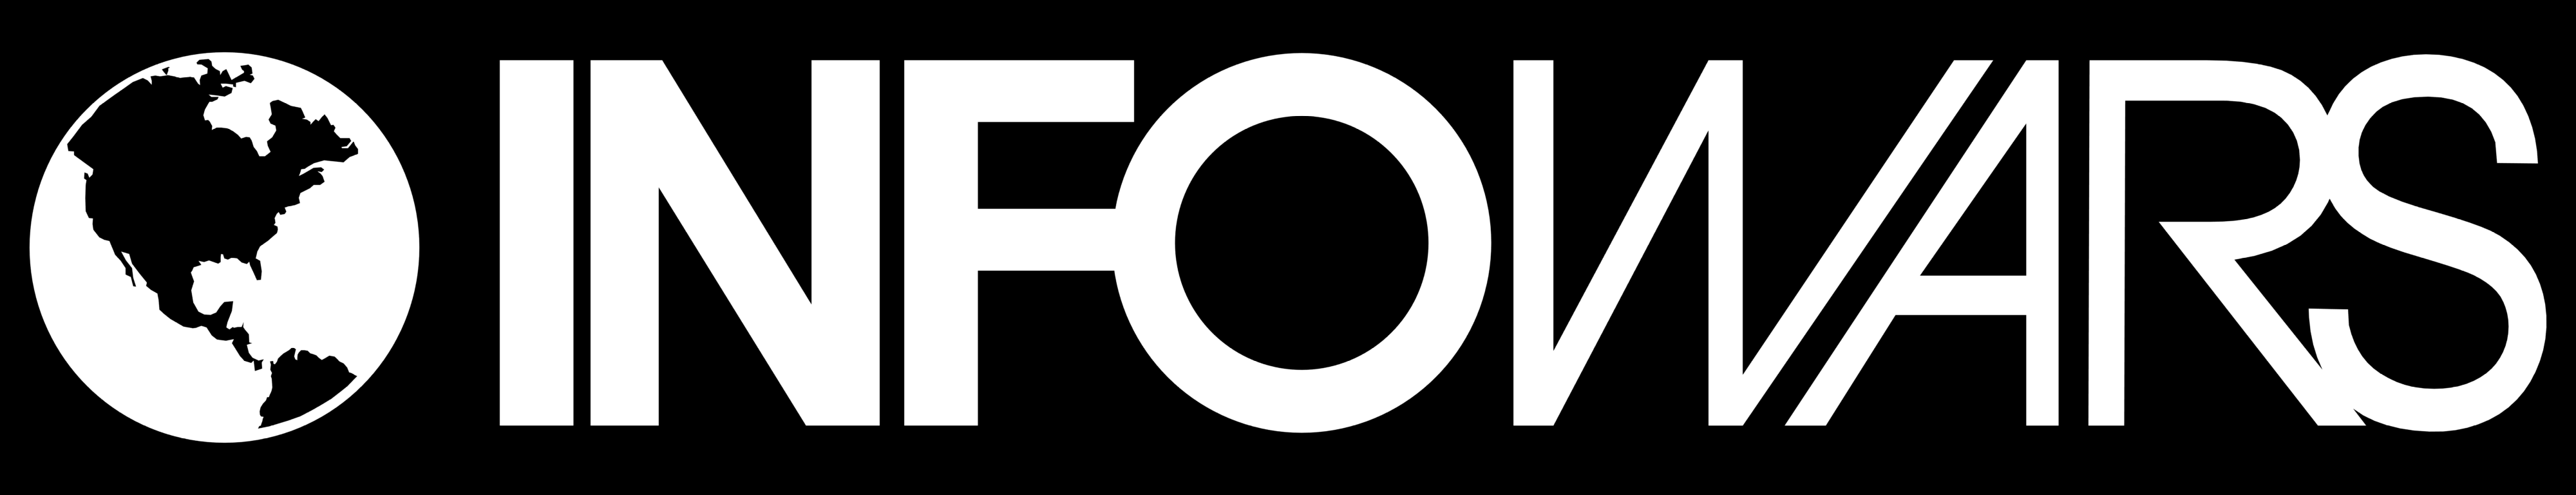 Infowars Logo